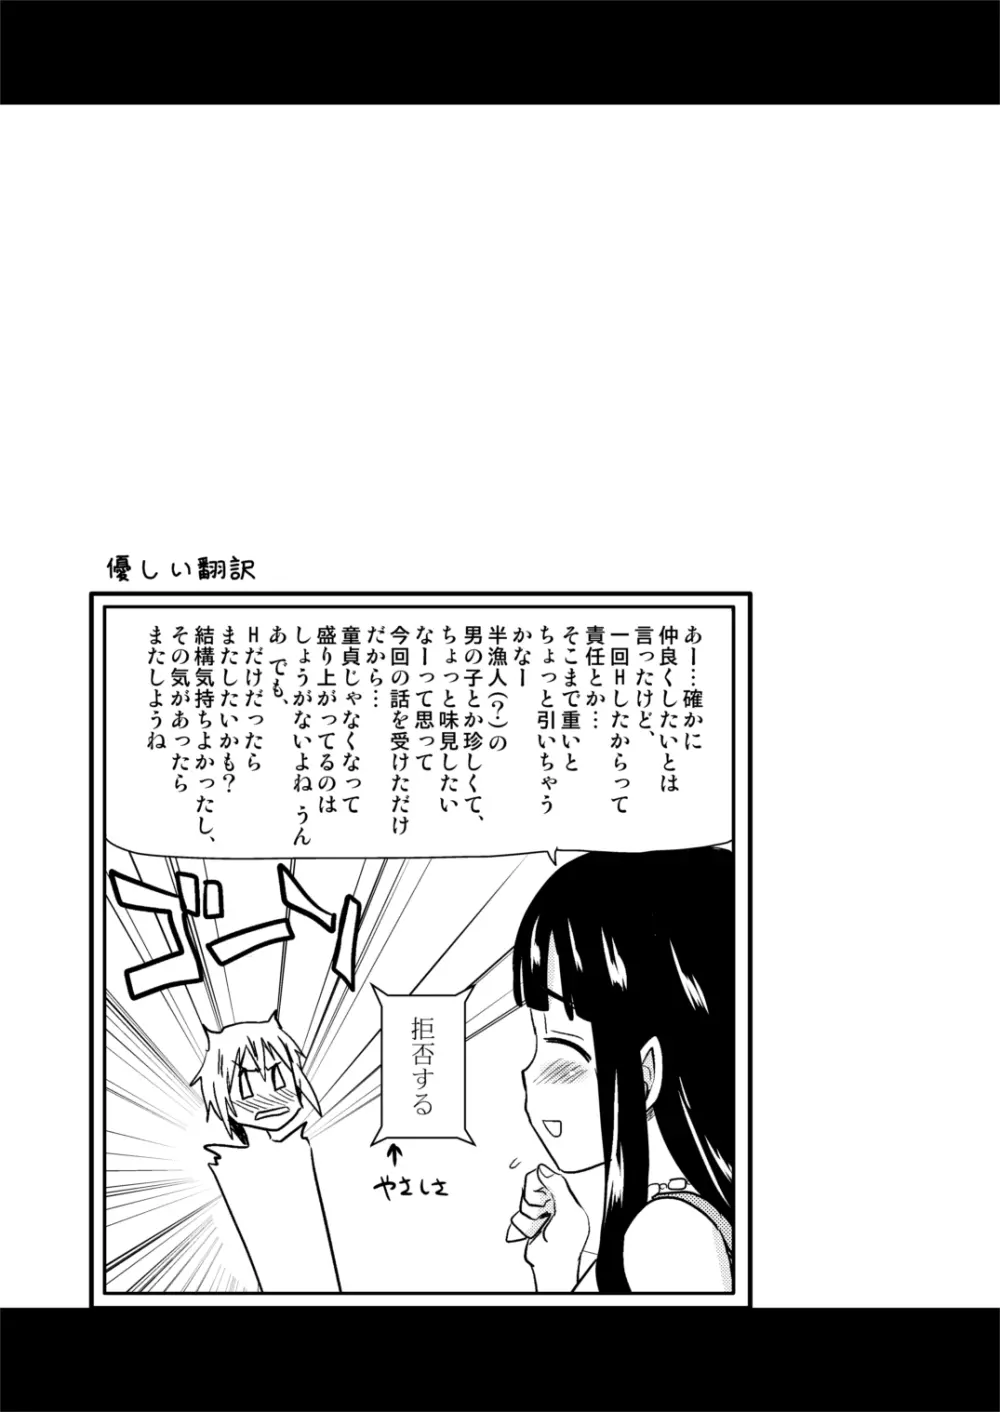 むちむち漫画14P - page16